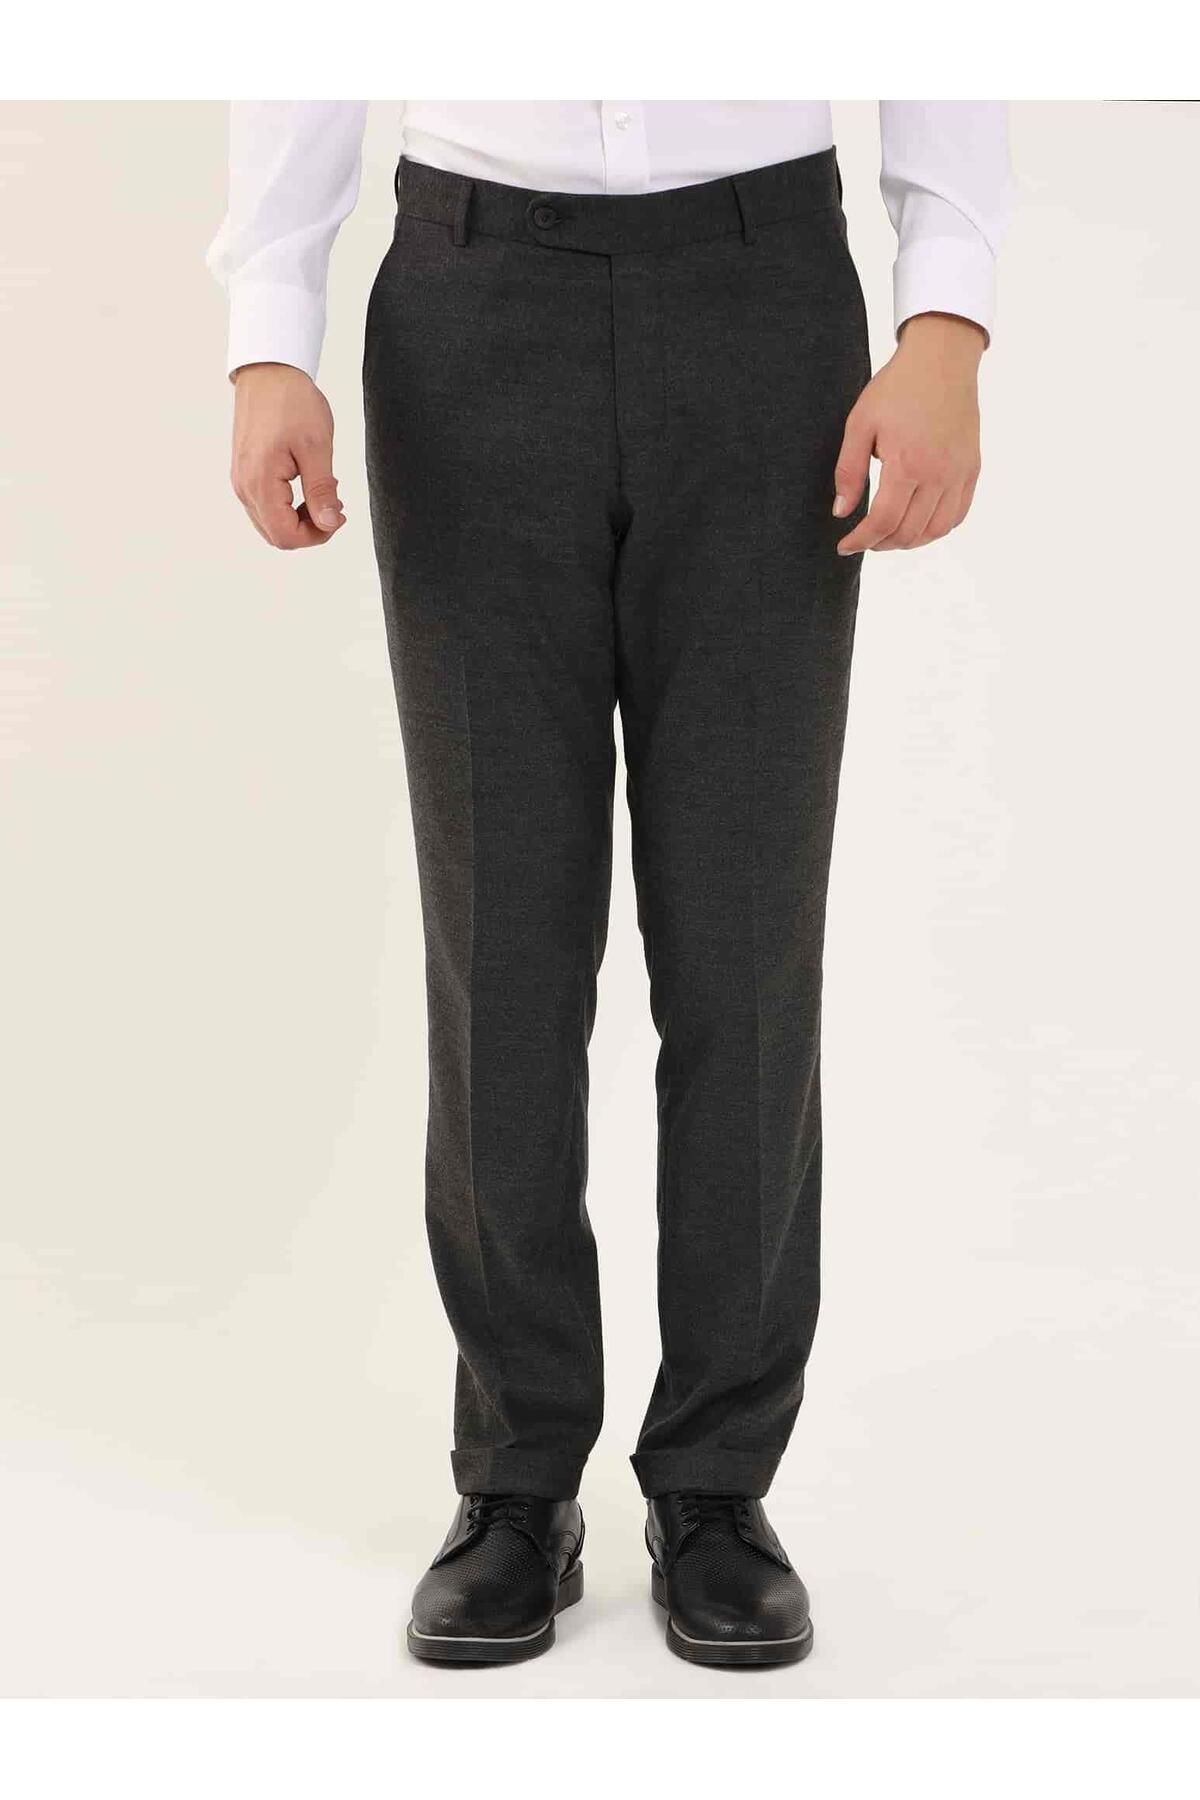 Dufy Koyu Gri Erkek Regular Fit Düz Klasik Pantolon - 97753